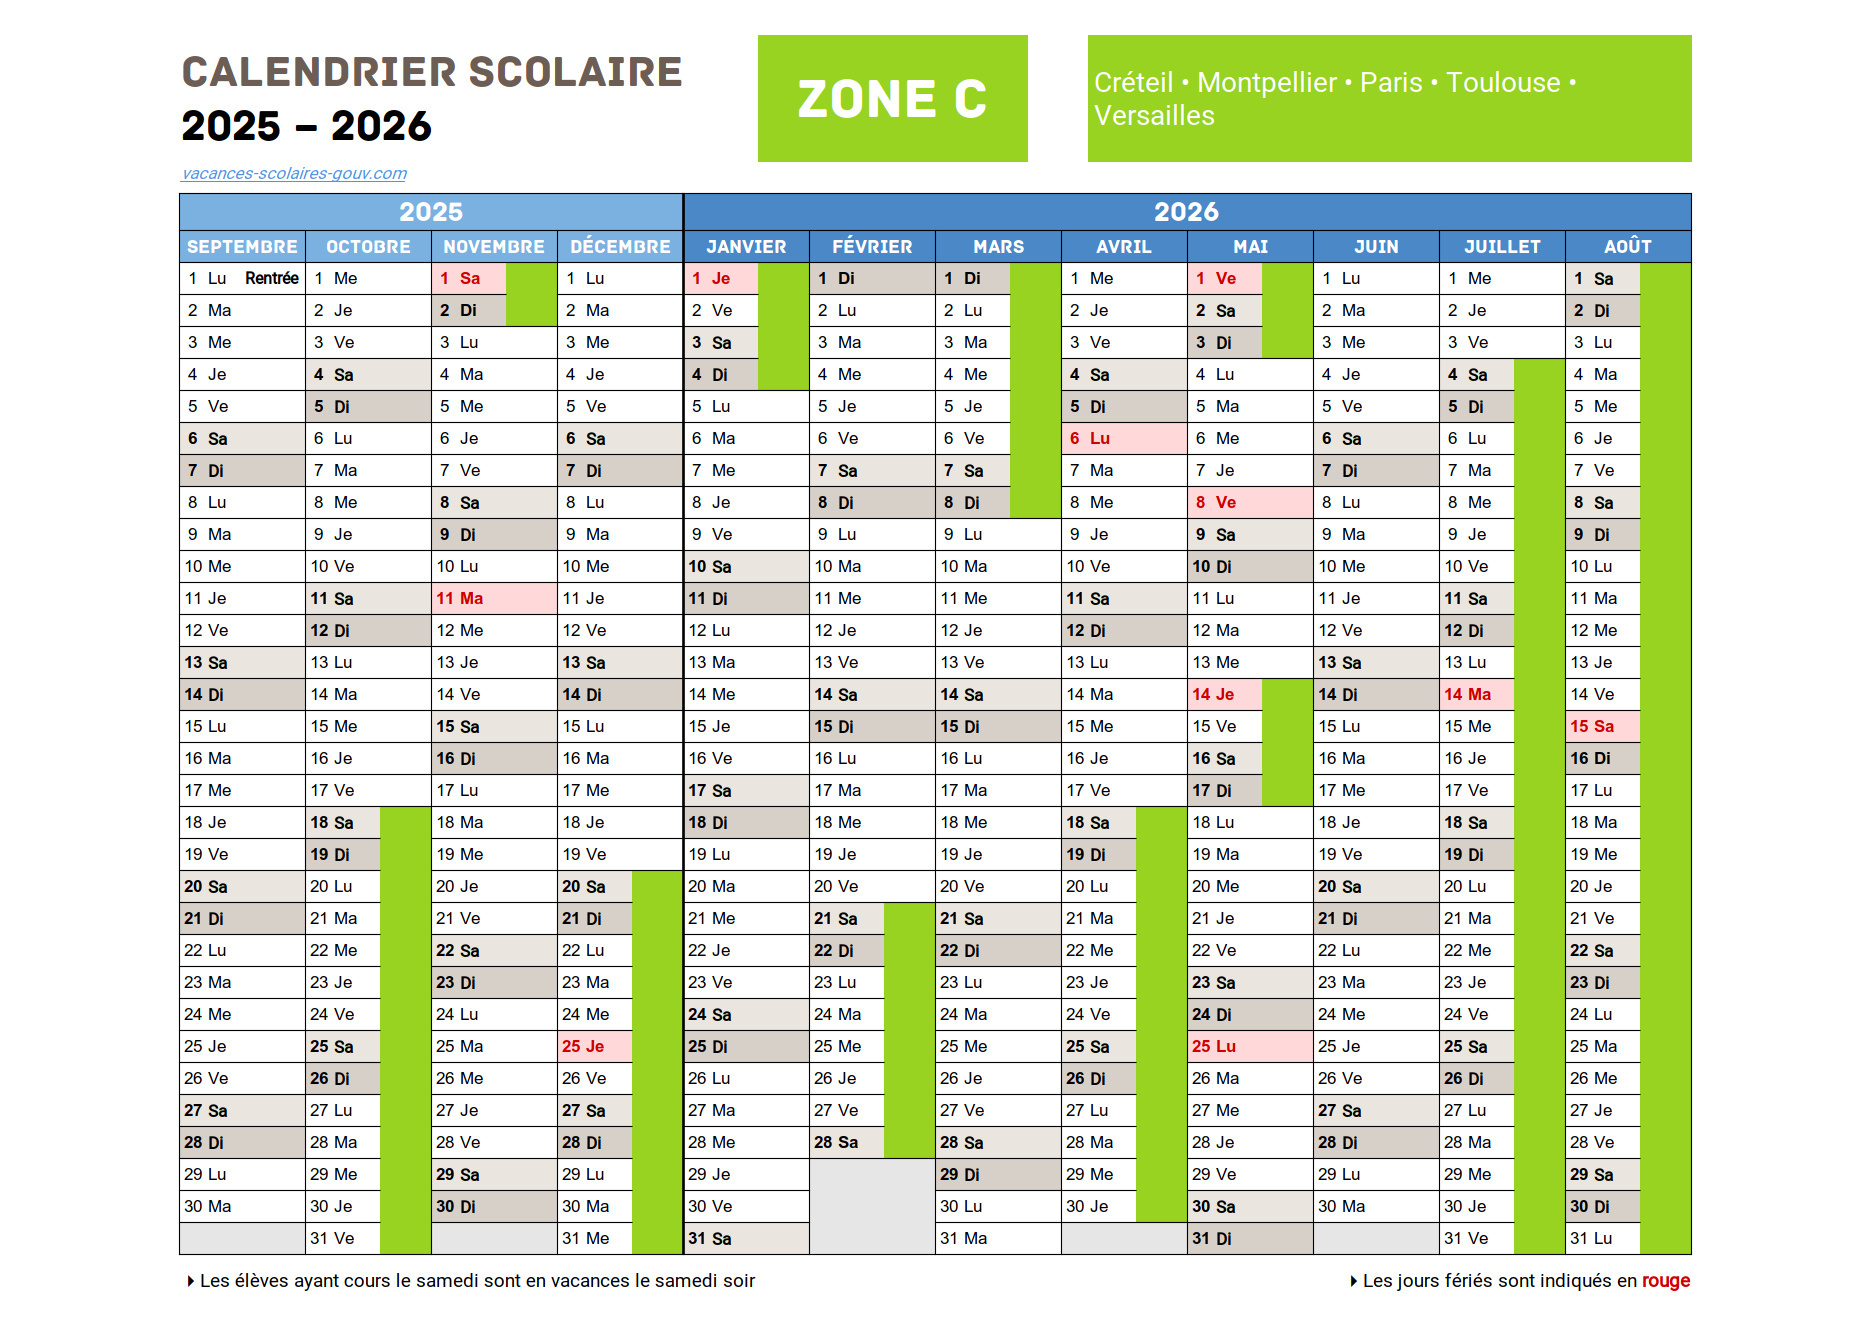 Calendrier Scolaire 2025-2026 ≡ Dates Officielles des vacances